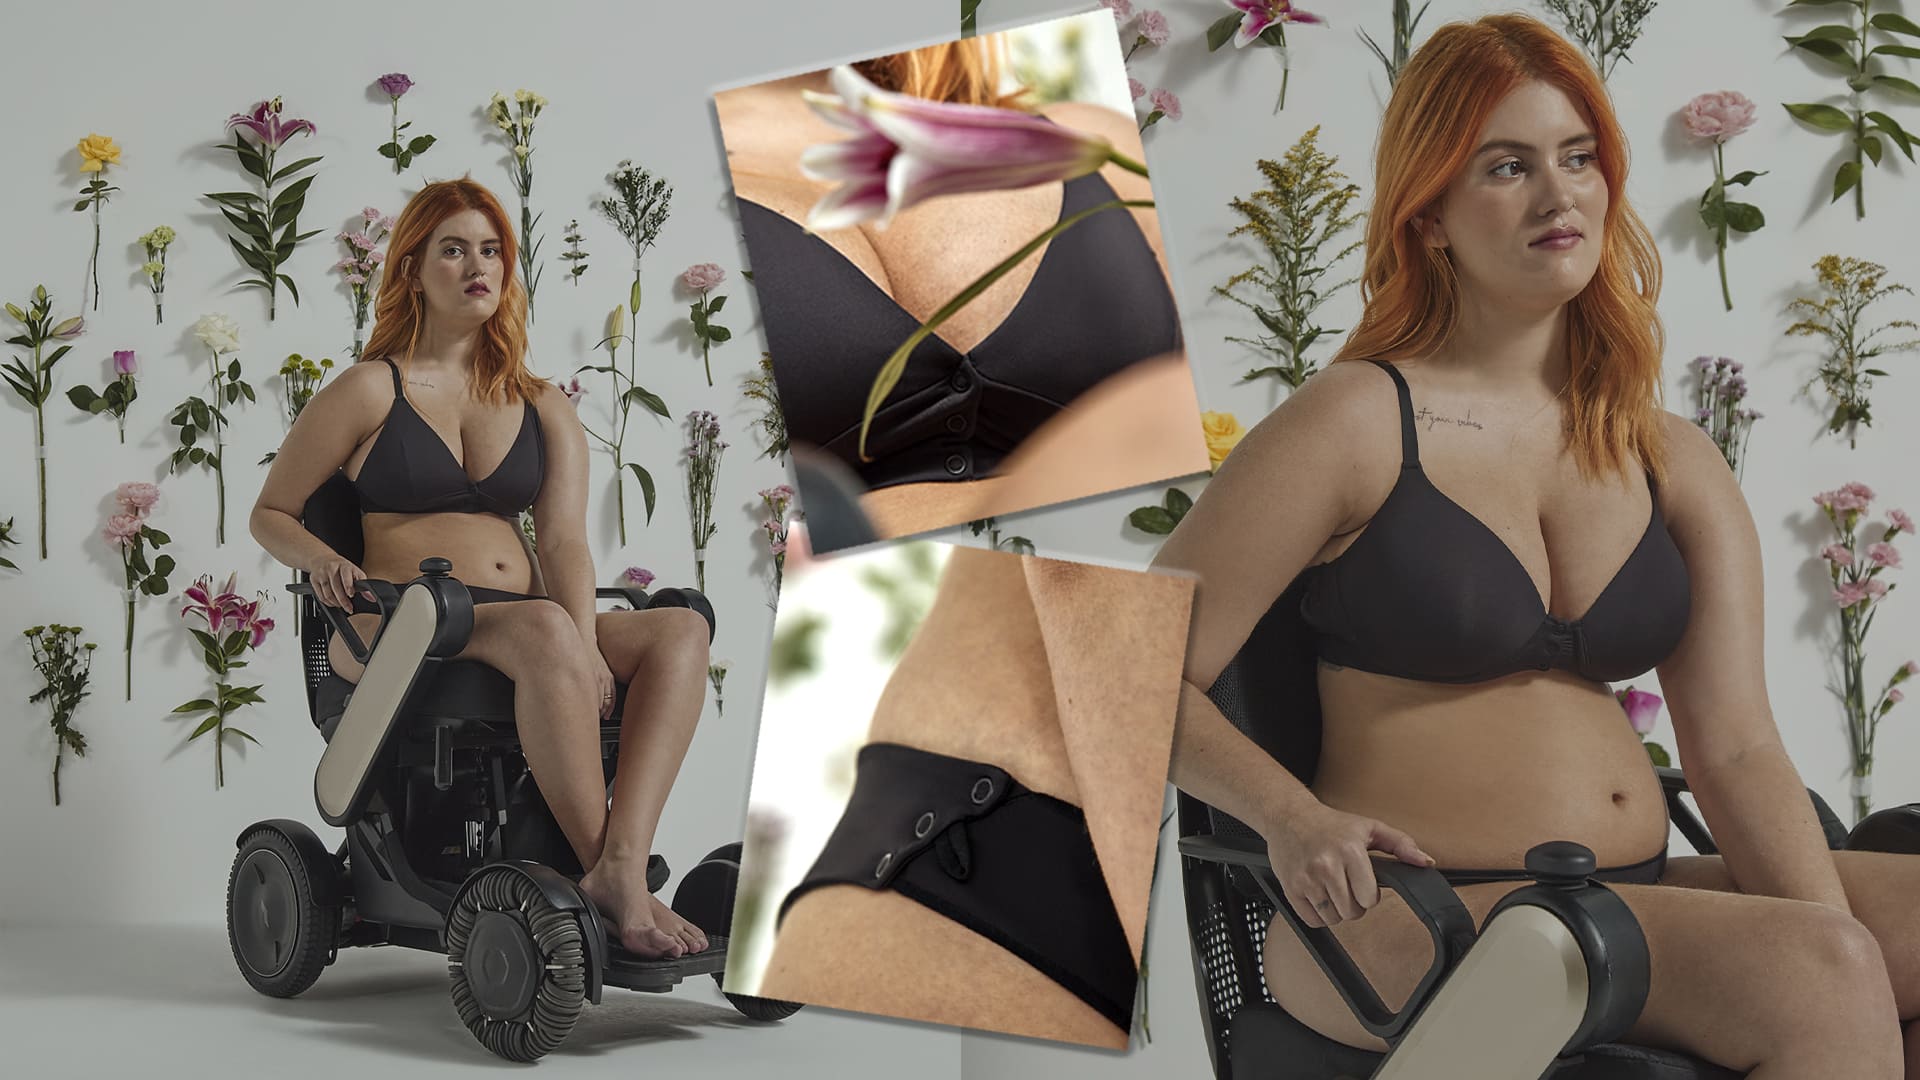 Fotografia de modelo cadeirante usando calcinha e sutiã - Fashion e Funcional: Moda Inclusiva